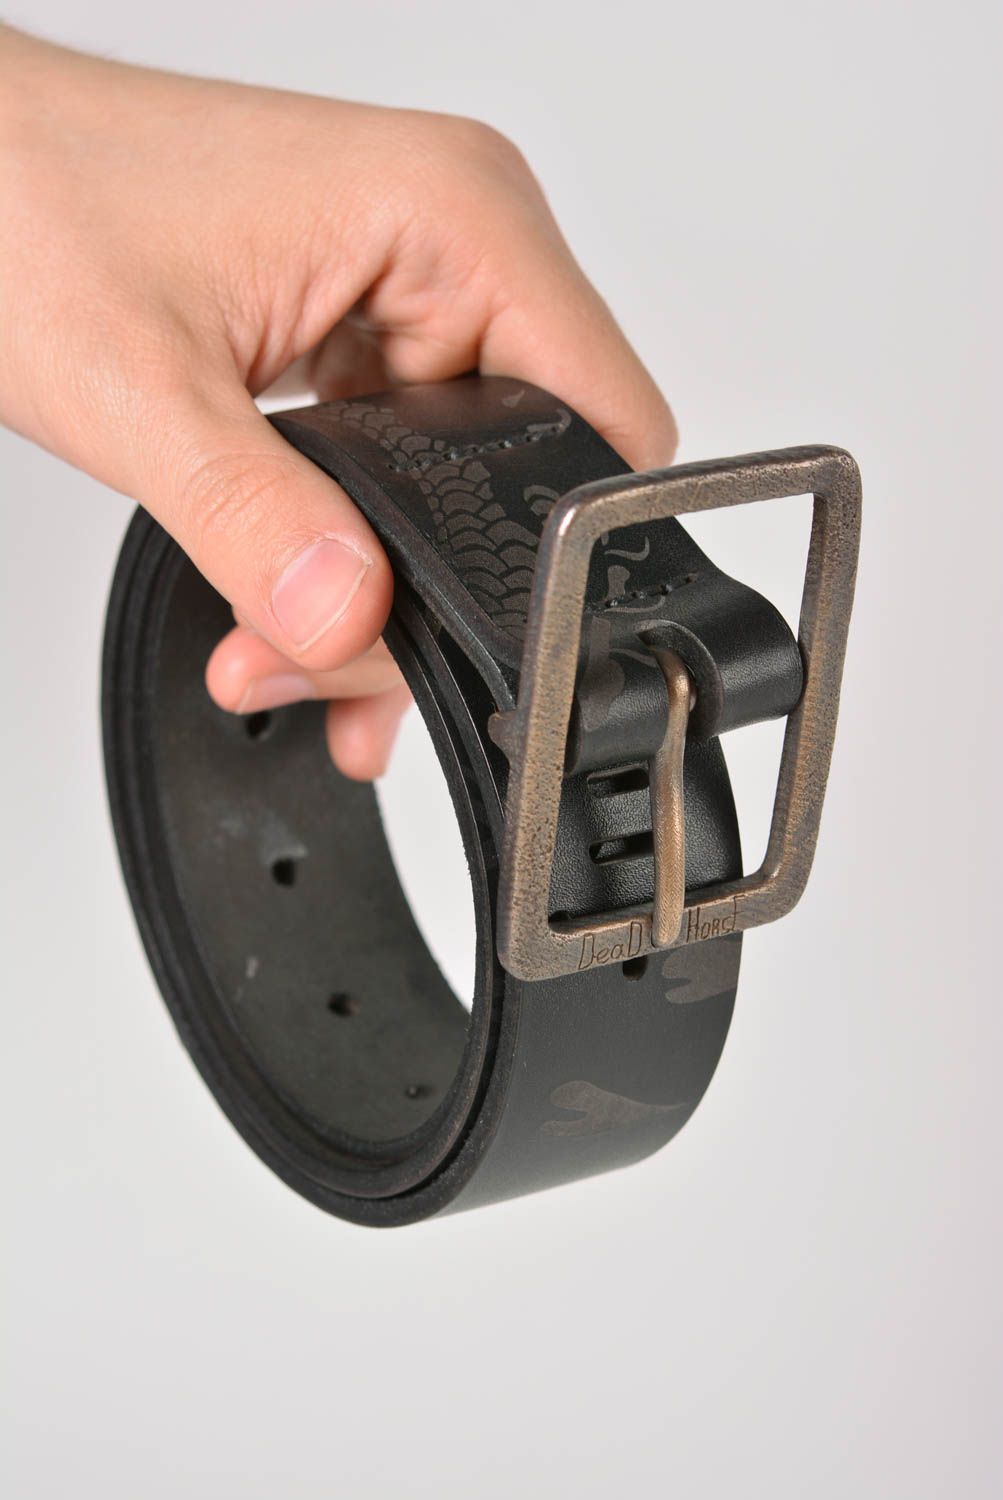 Cinturón de cuero hecho a mano ropa masculina accesorio de moda poco común foto 3